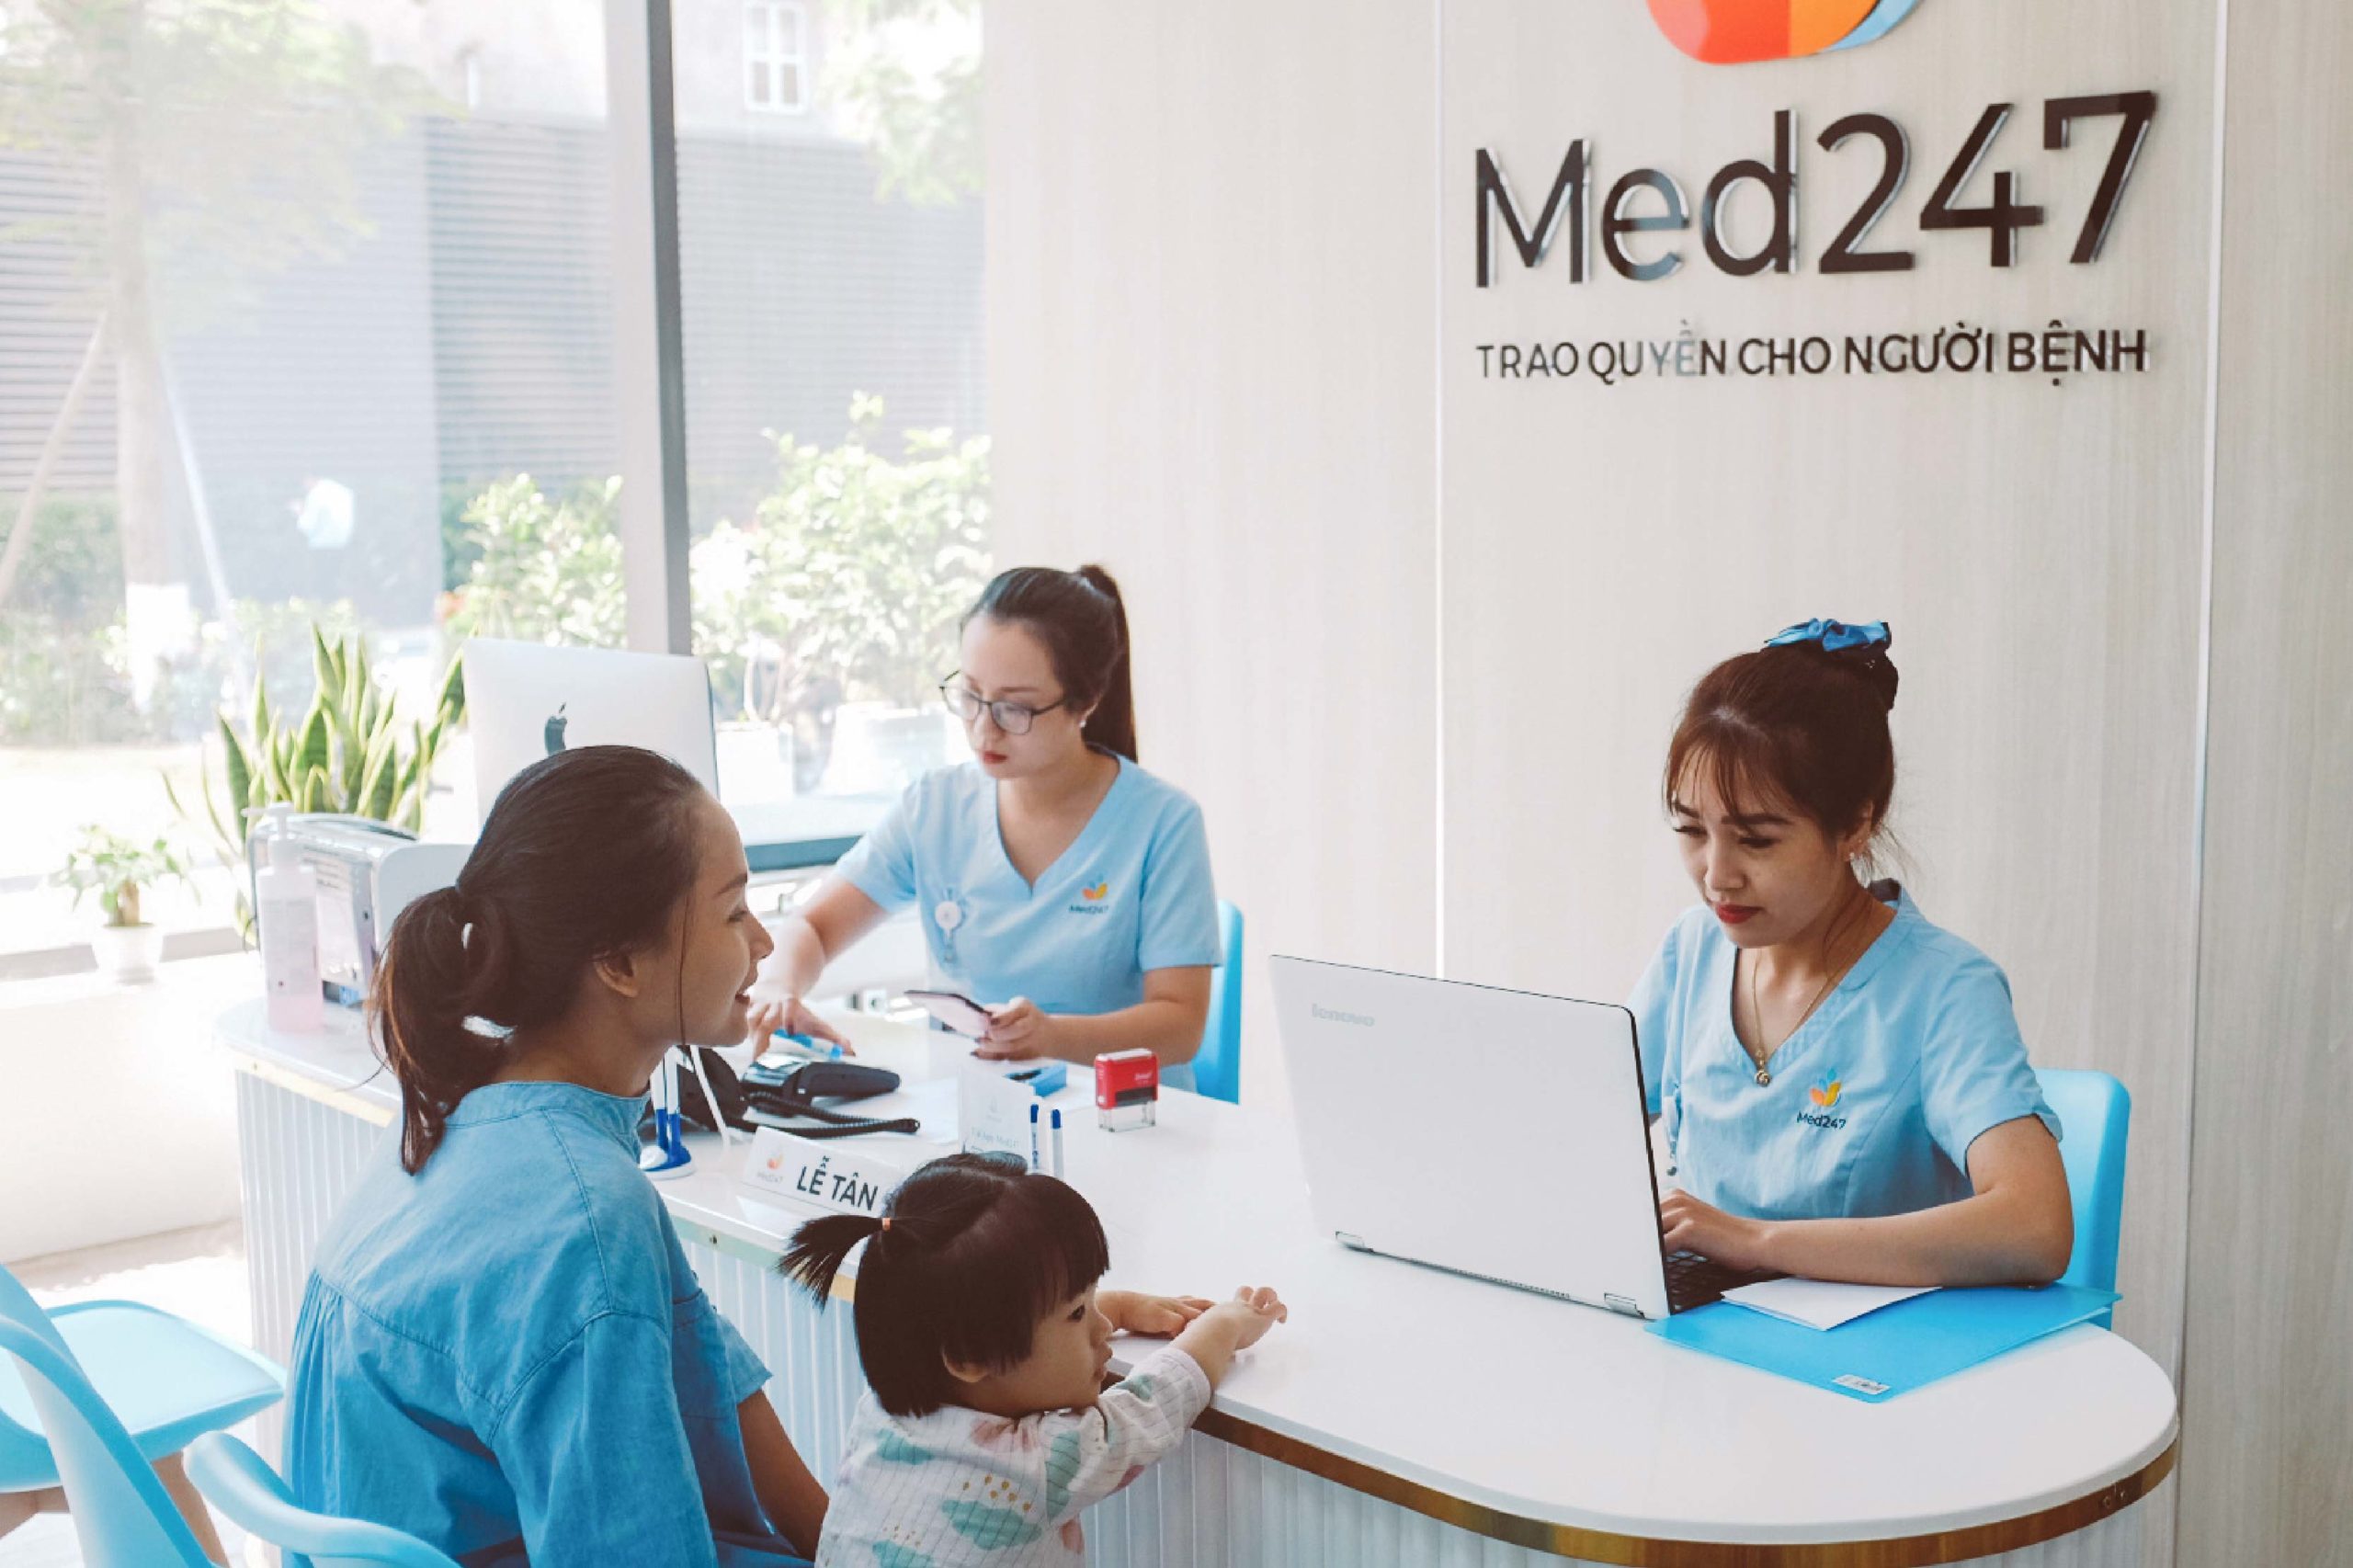 Dịch vụ tư vấn bác sĩ nhi trực tuyến, khám online tại Med247